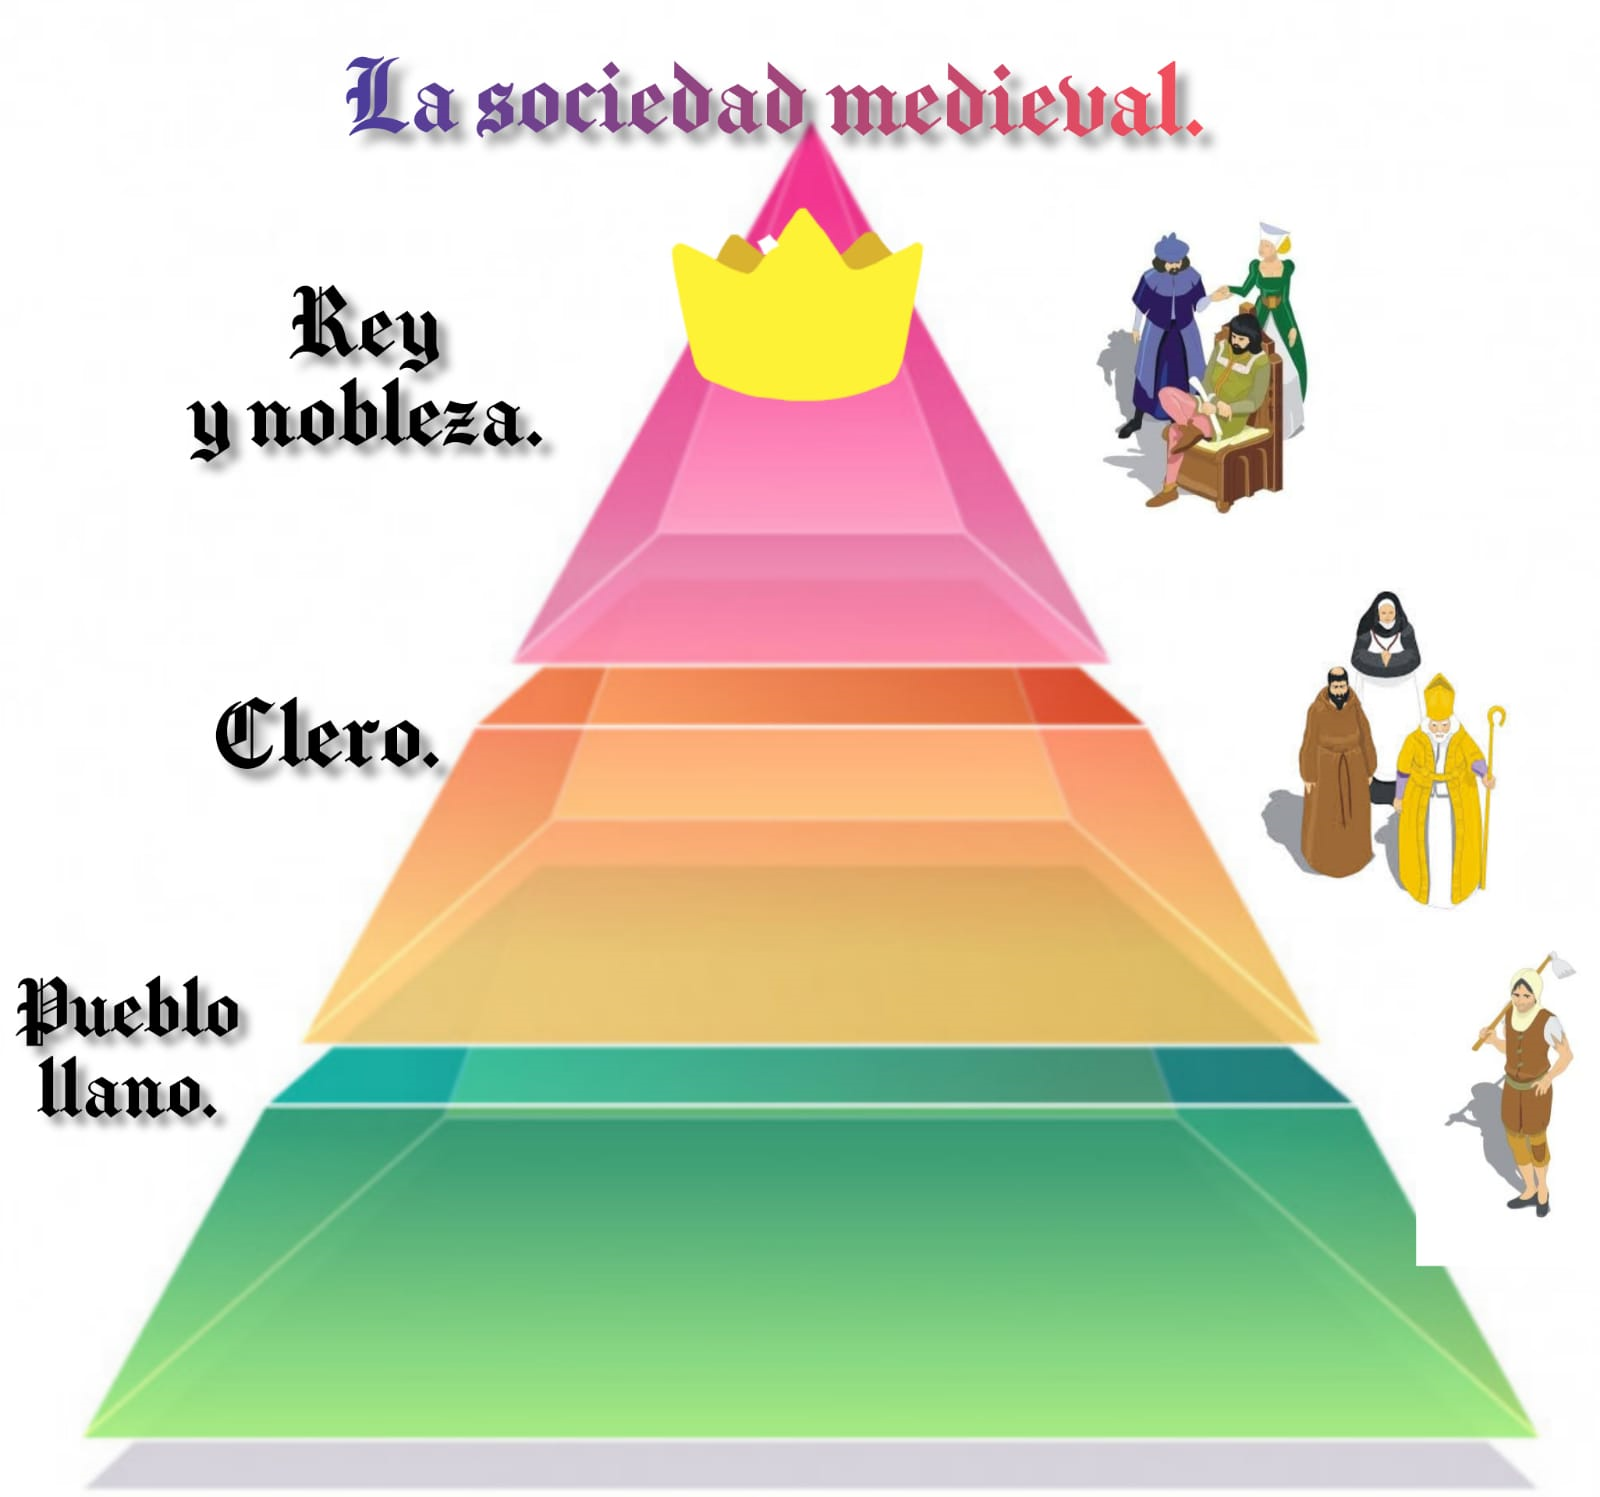 Una pirámide (o triágulo) donde el "Pueblo llano" (fundamentalmente los campesinos) están en la base de la misma, en la parte más ancha, que sostiene al resto de la pirámide; en el medio, se encuentra el clero, apoyado en el pueblo, ocupando un espacio menor y por debajo de los intergrantes de la punta de la pirámide, que ocupan un espacio menor aún y están sobre todos: el Rey y la nobleza. 